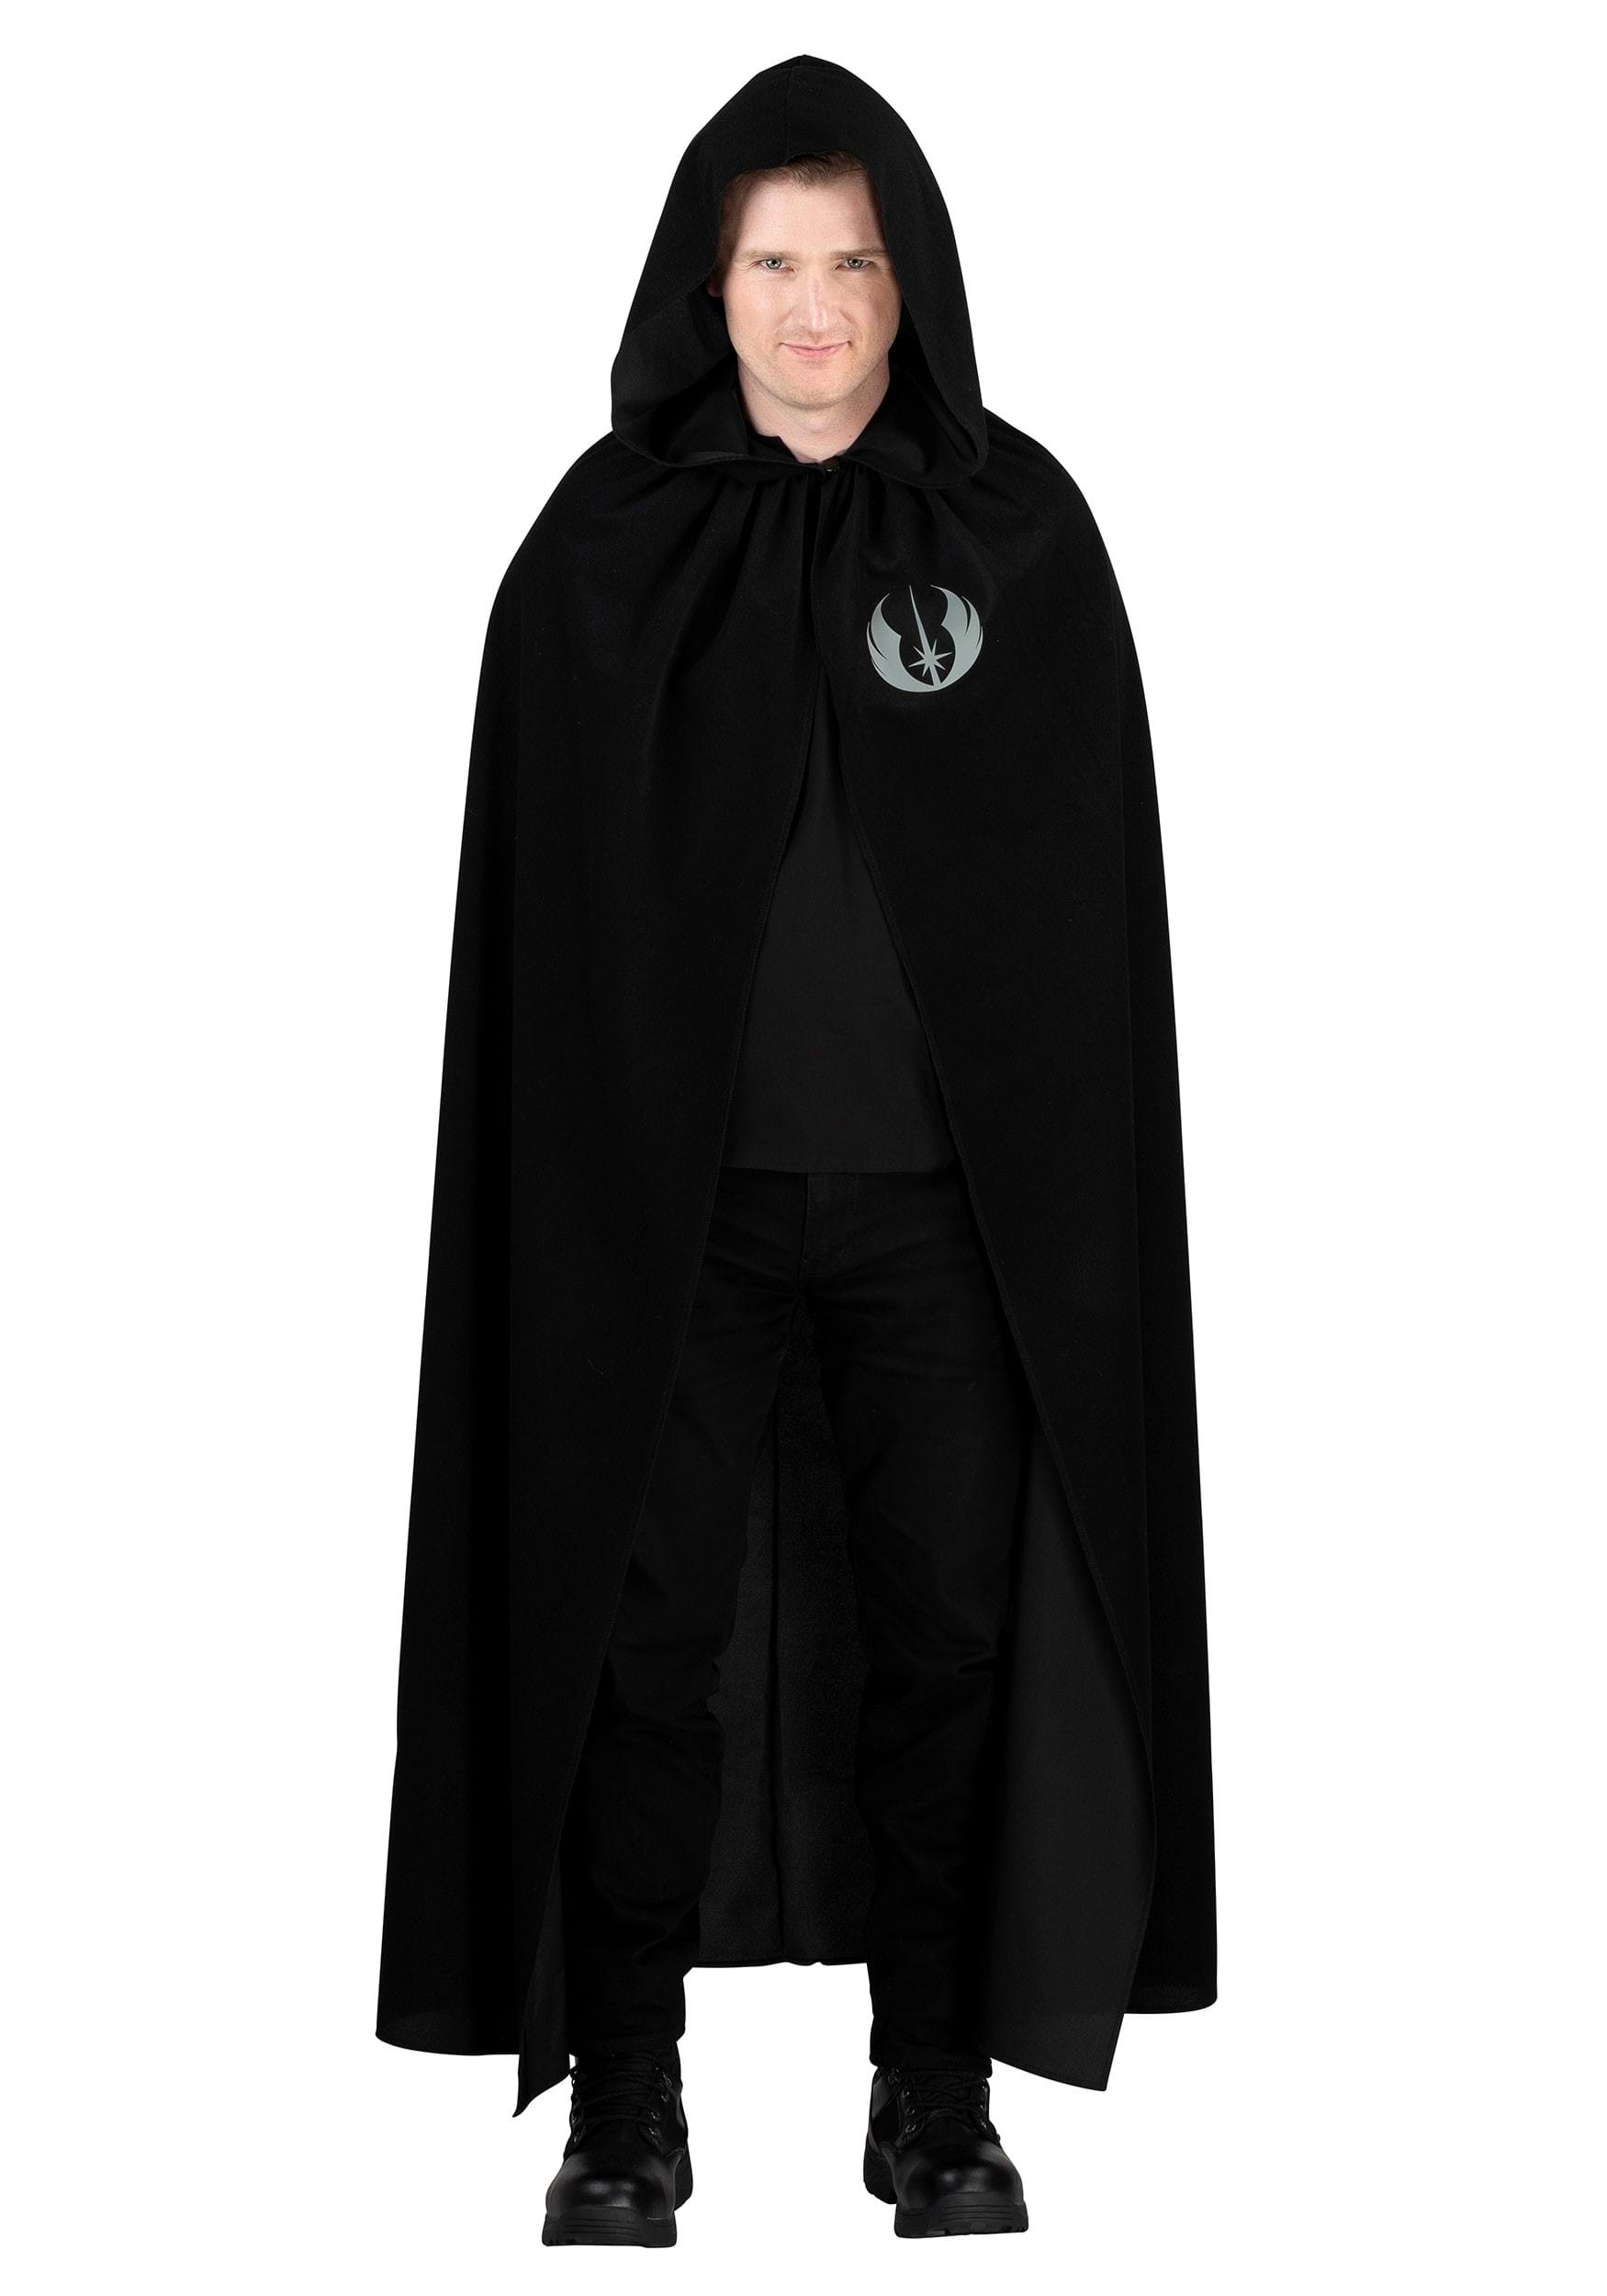 Star Wars Men's Luke Skywalker Black Hooded Robe Costume